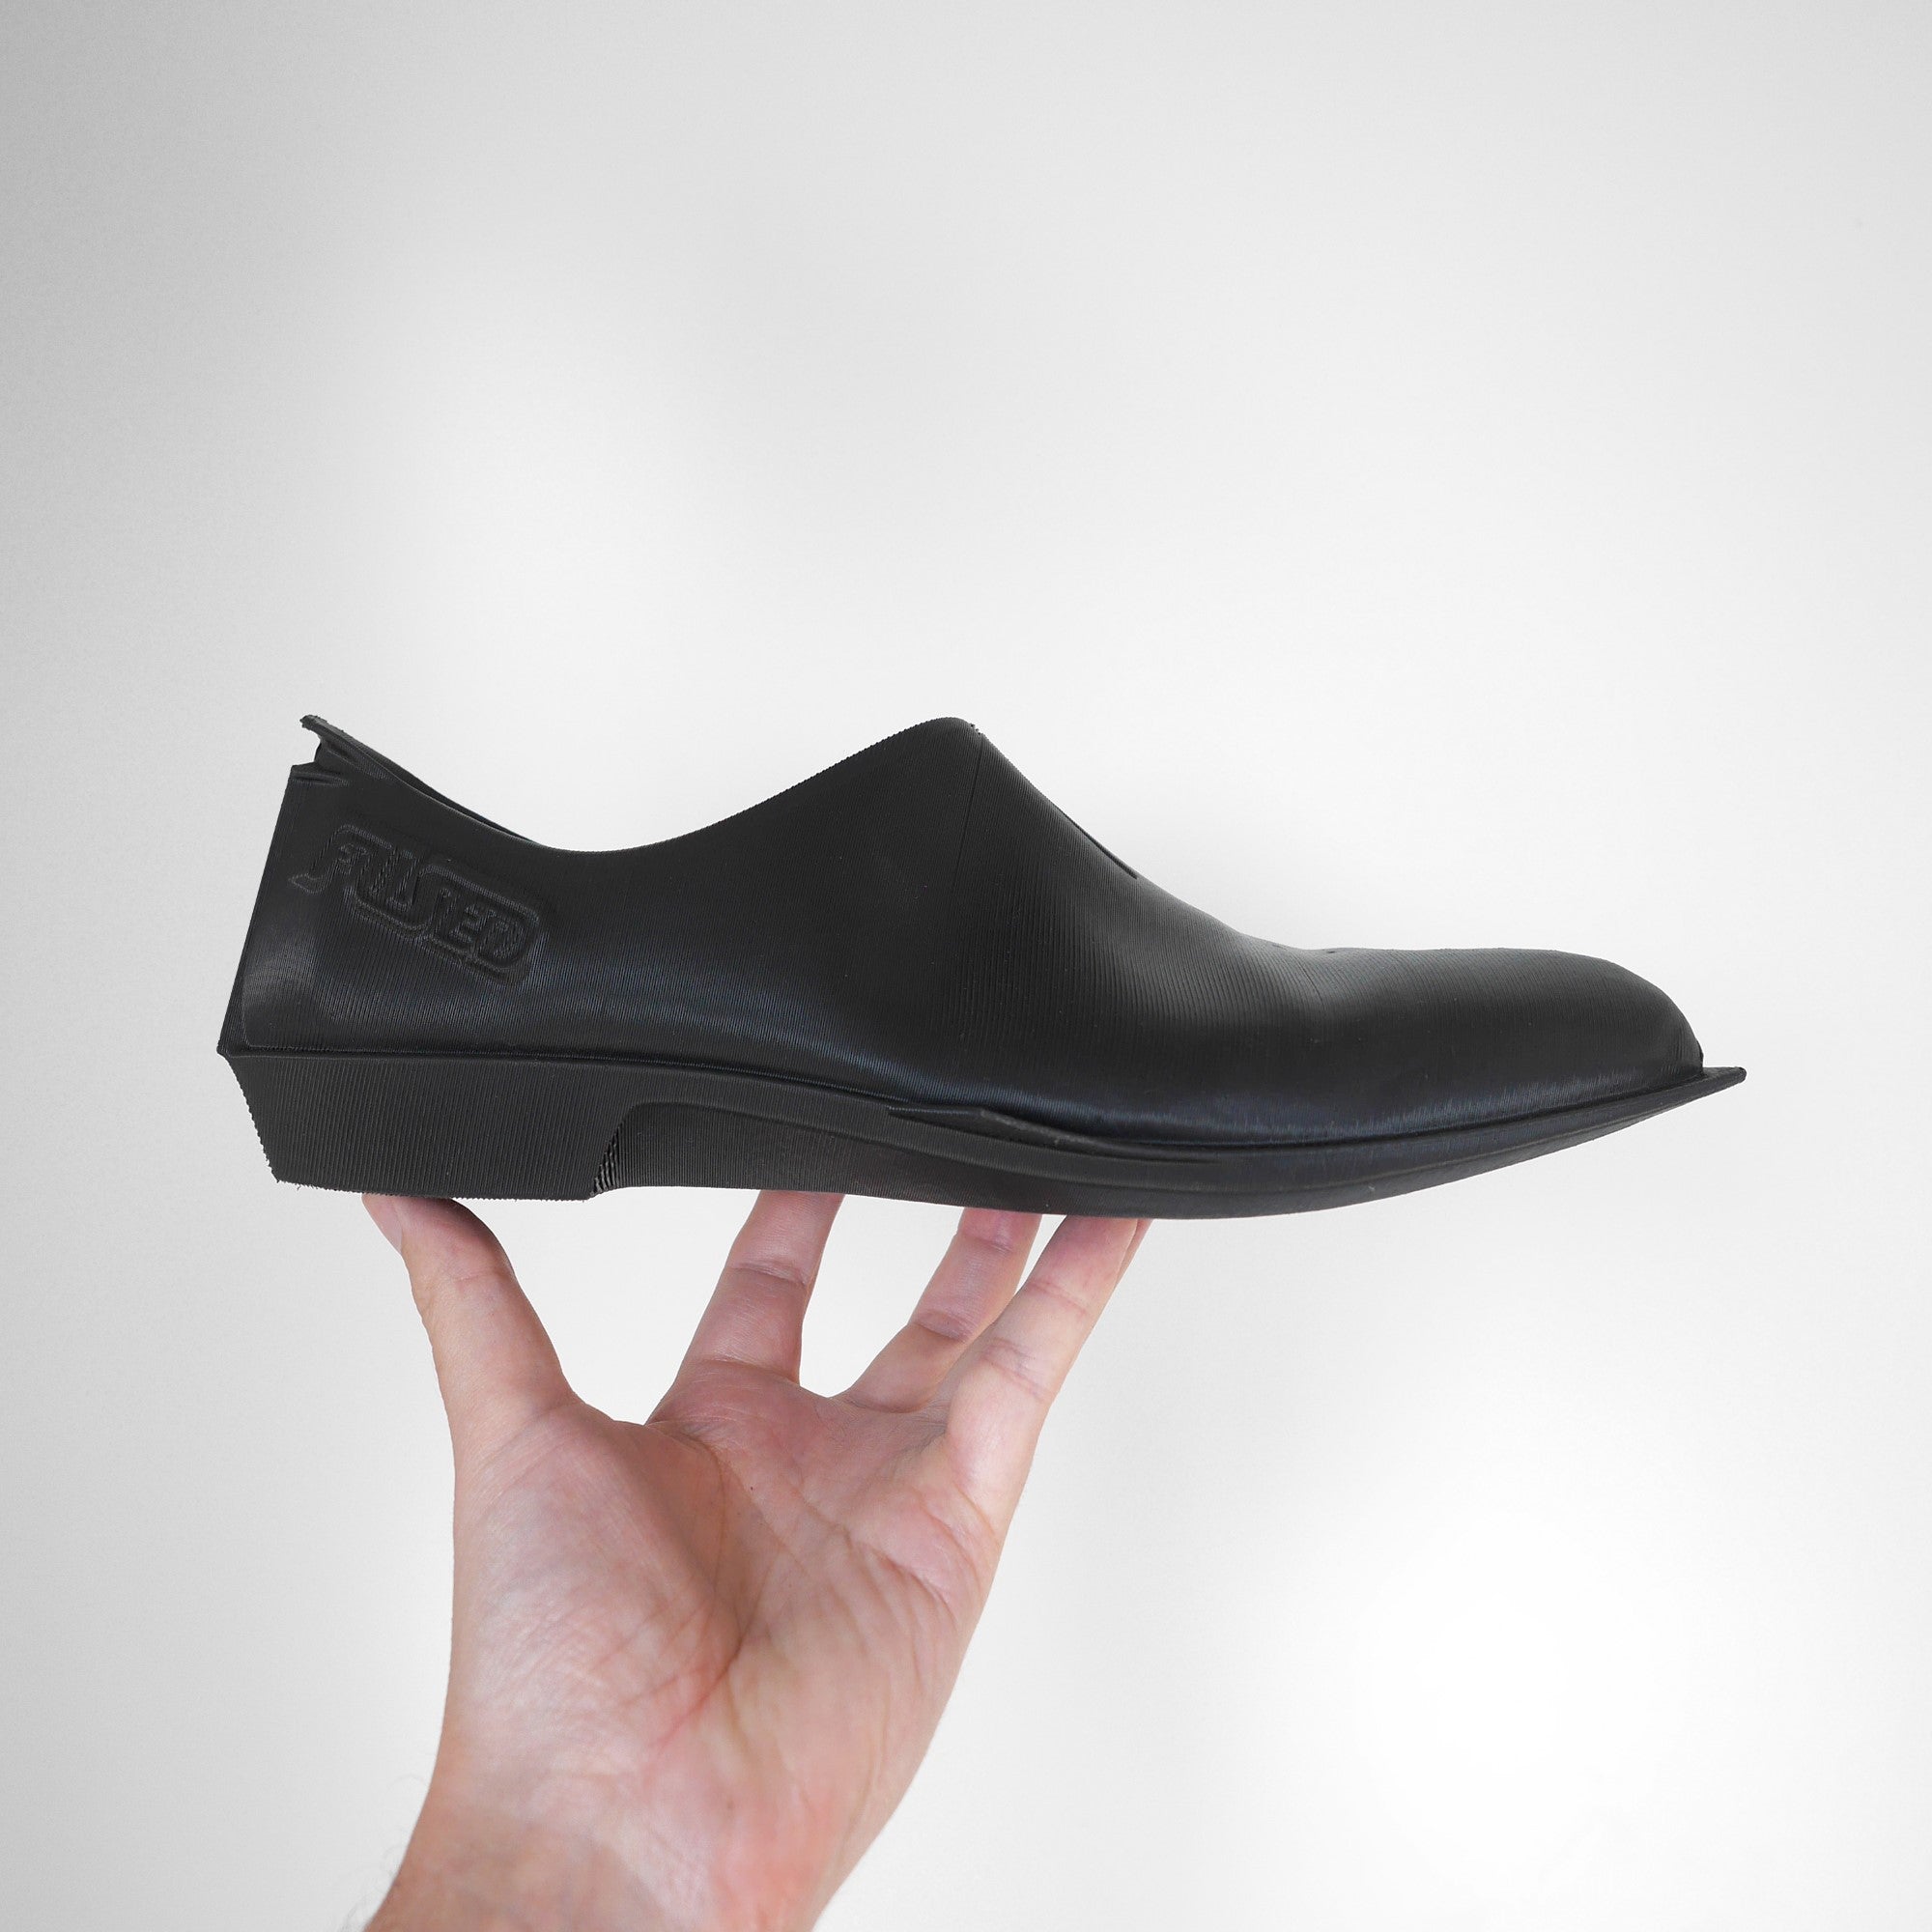 FUSED Shado - 3D printed footwear – FUSEDfootwear